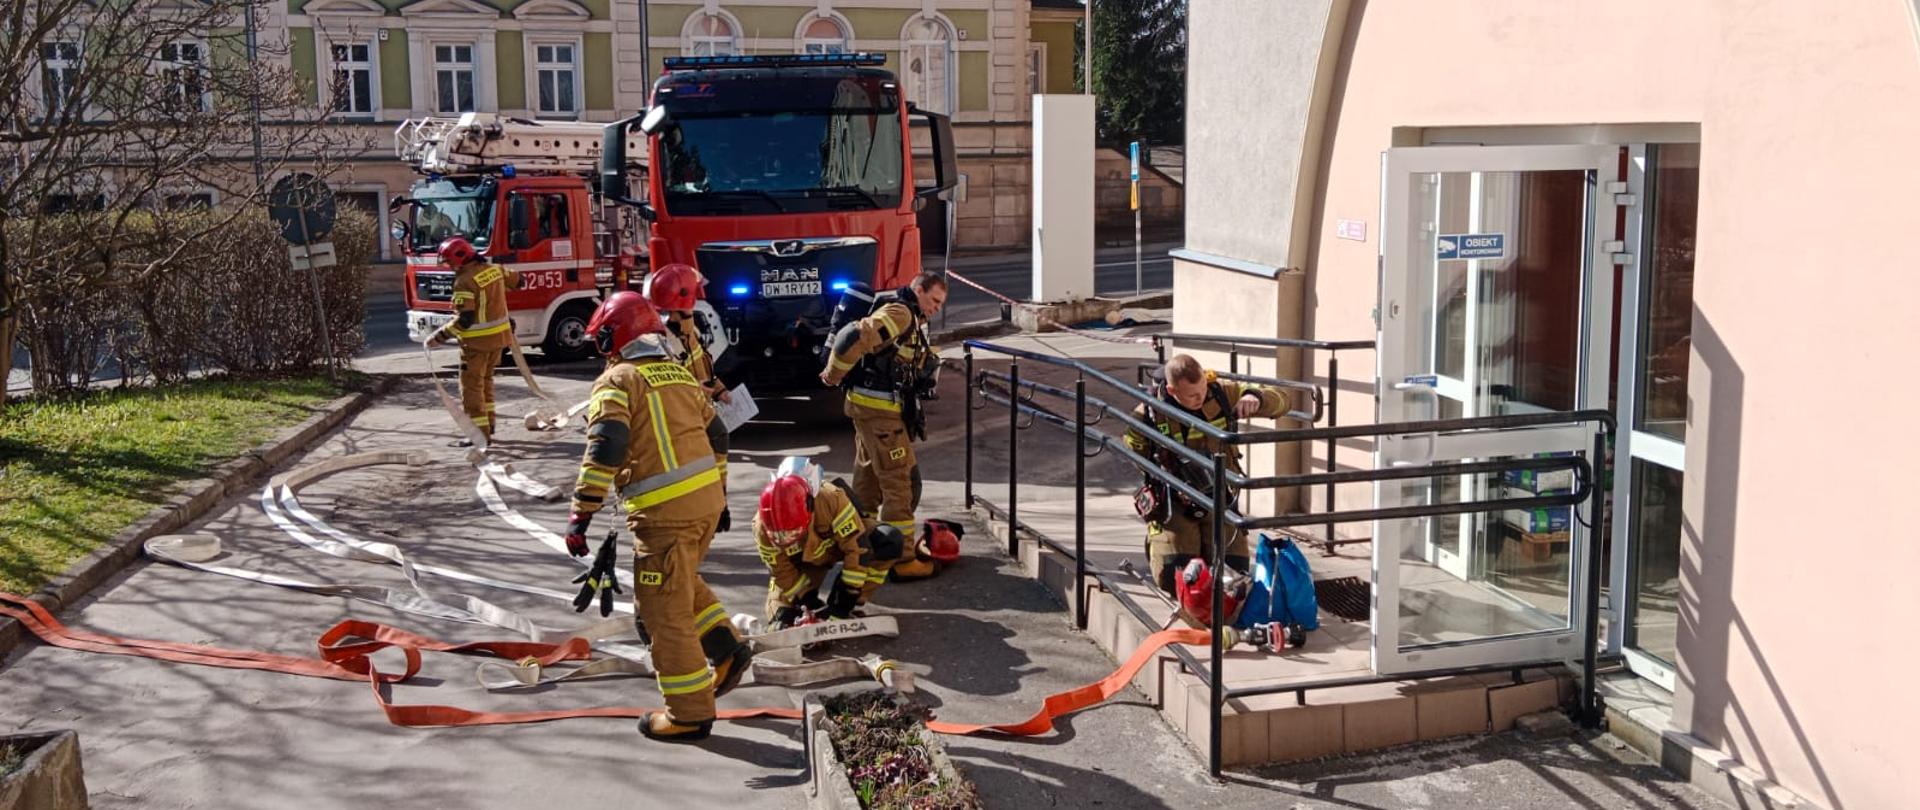 Przed wejściem do budynku sześciu strażaków przygotowuje się do przeprowadzenia ćwiczeń. Za nimi stoją dwa pojazdy strażackie. W tle widok na dwukondygnacyjny budynek.